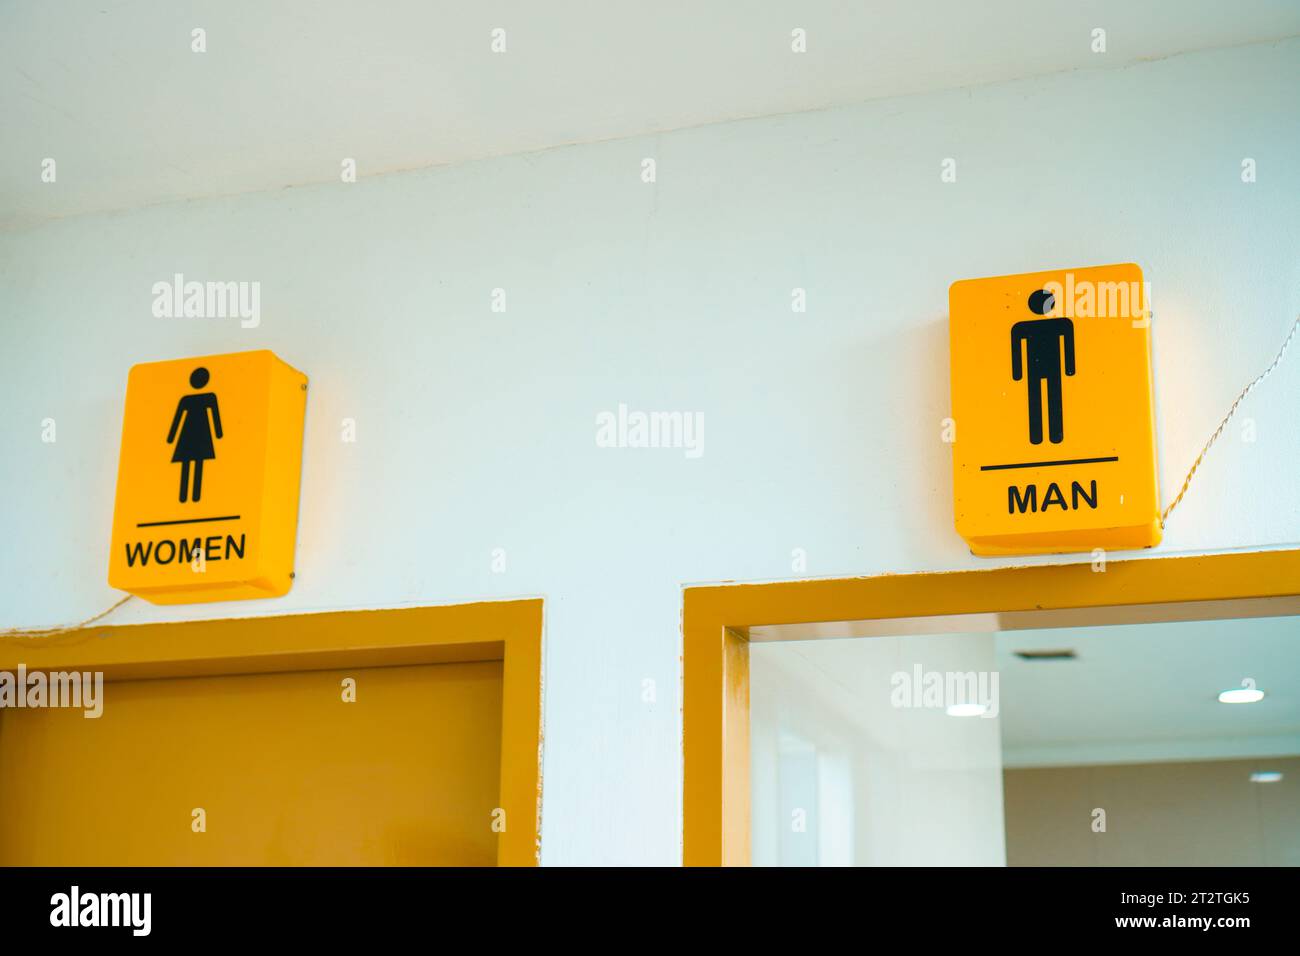 Gelbe Toilettenmarkierungen, die die Toiletten für Männer und Frauen unterscheiden Stockfoto